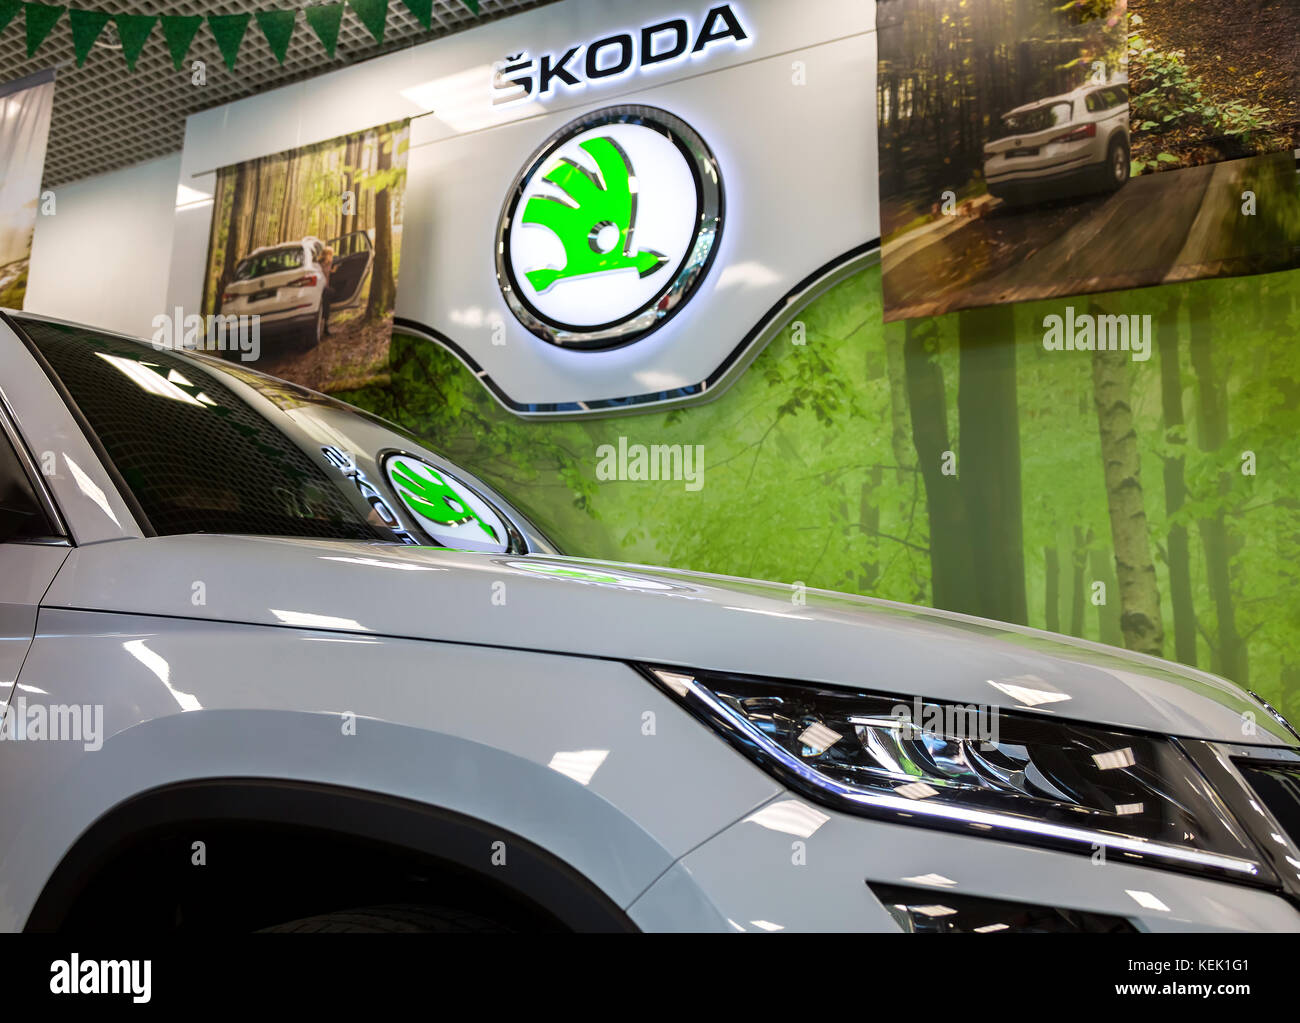 Samara, Russland - Juni 3, 2017: Der händlerniederlassung Zeichen von Skoda. Skoda Auto ist ein Automobilhersteller in der Tschechischen Republik Stockfoto